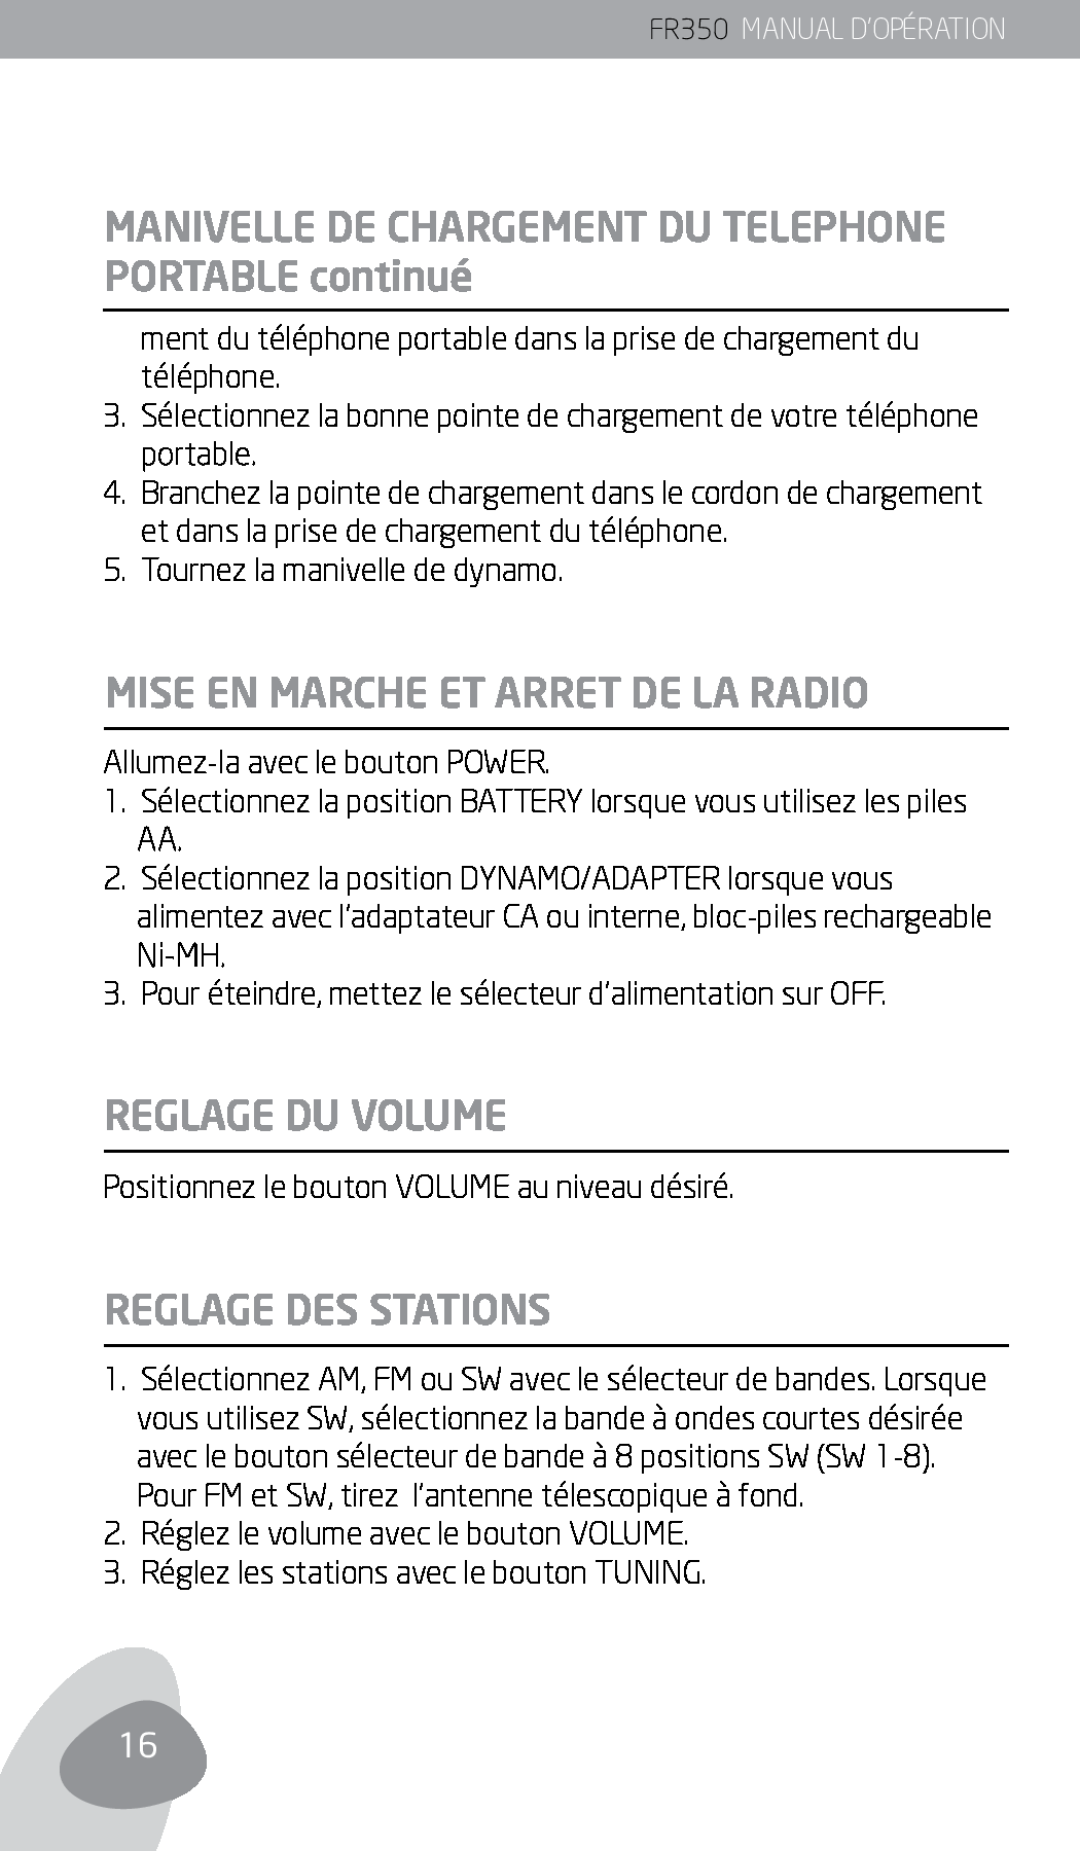 Eton FR350 owner manual Mise En Marche Et Arret De La Radio, Reglage Du Volume, Reglage Des Stations 